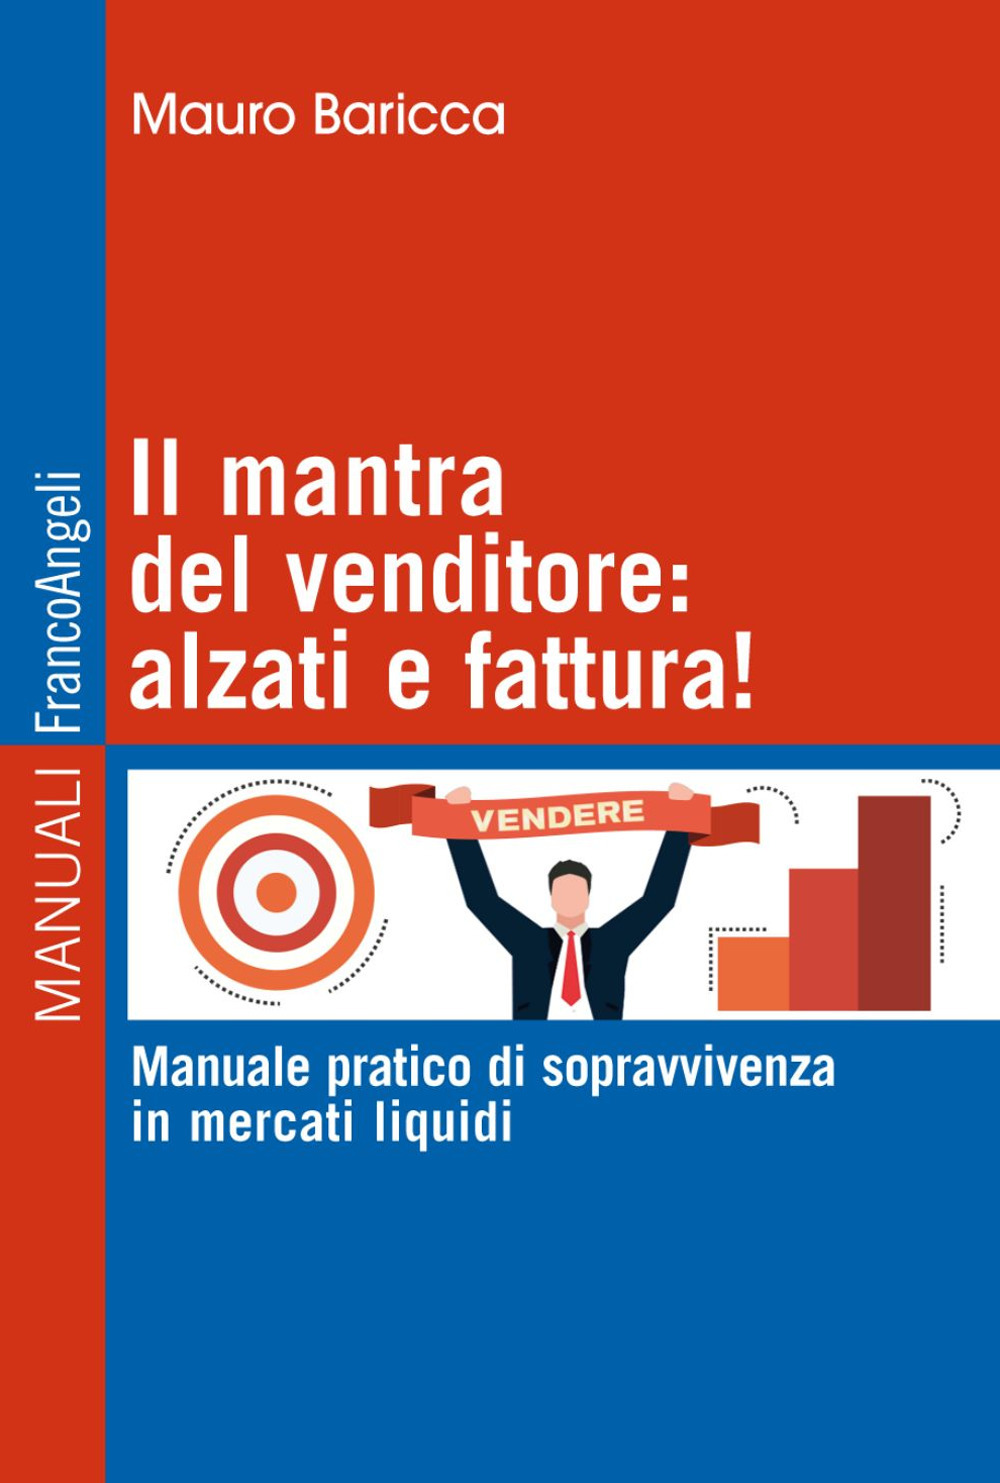 Image of Il mantra del venditore: alzati e fattura! Manuale pratico di sopravvivenza in mercati liquidi